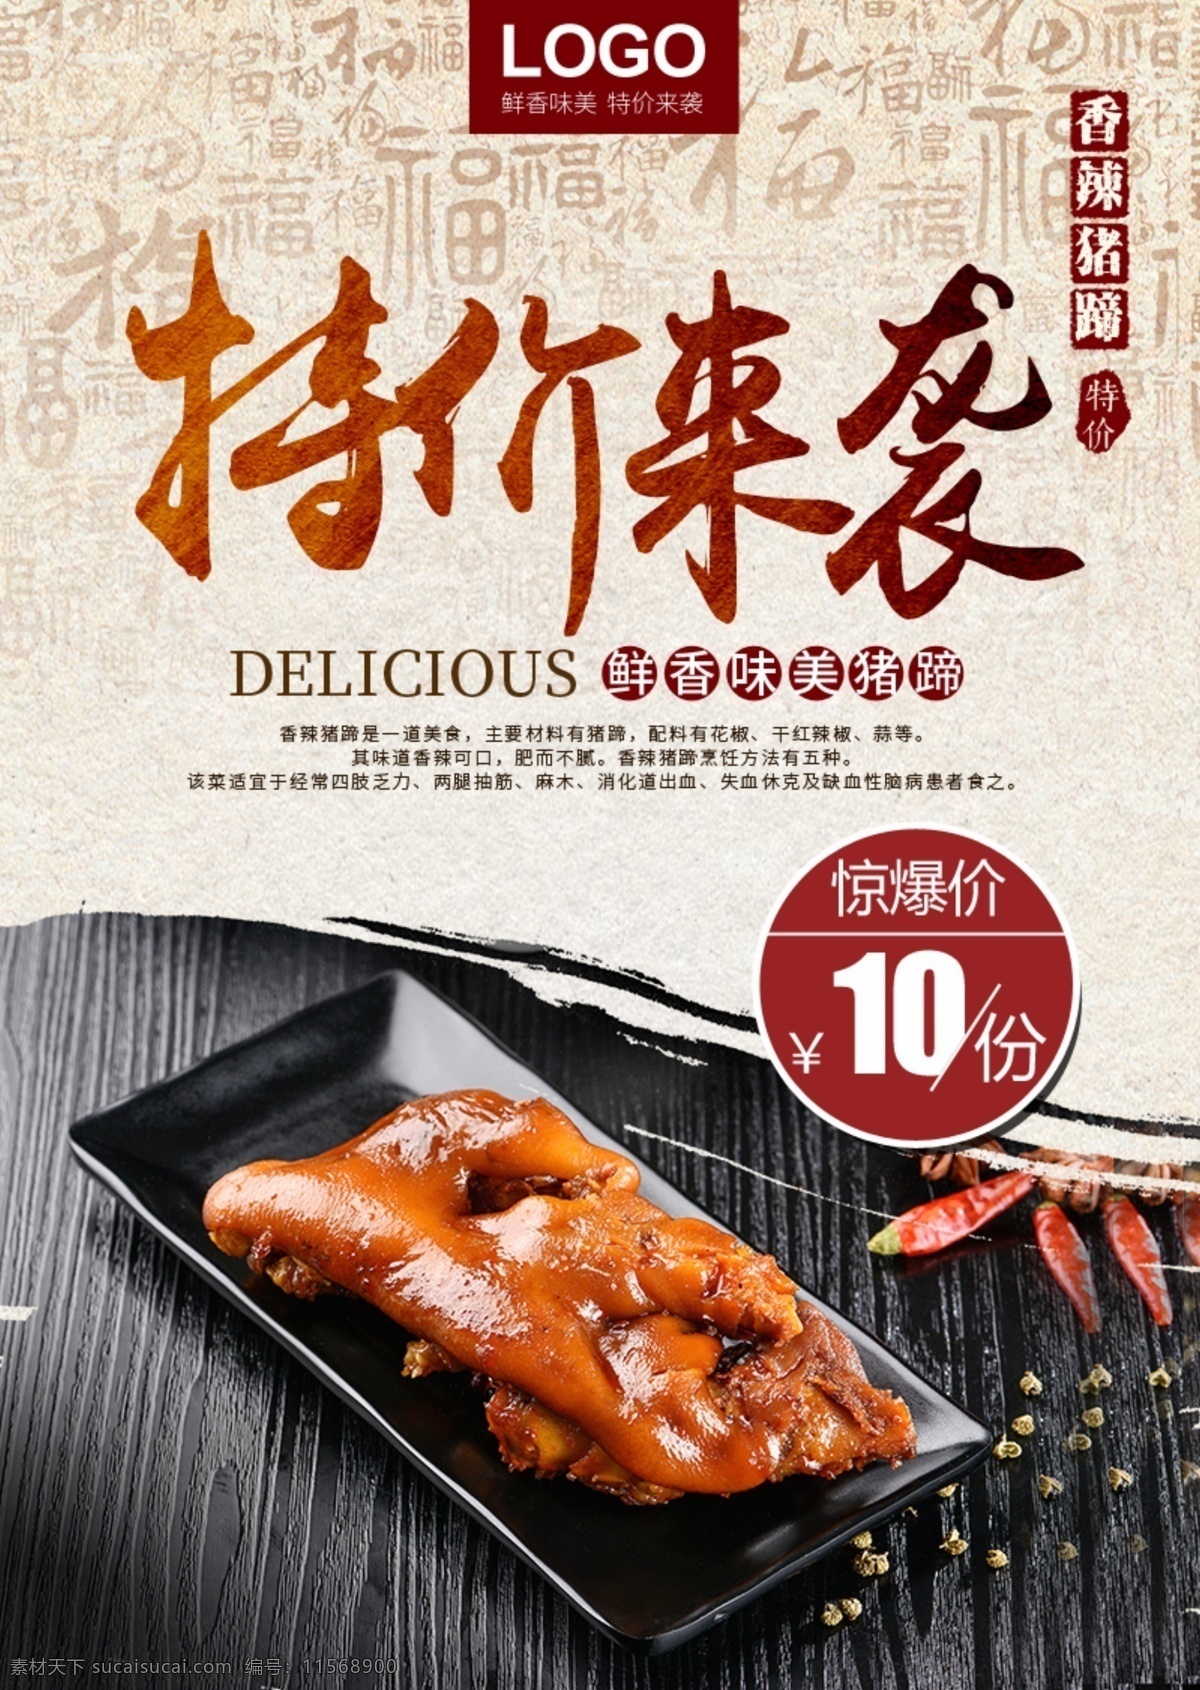 香辣 猪蹄 美食 招贴 特价 辣椒 香辣美食 宣传广告 美食海报